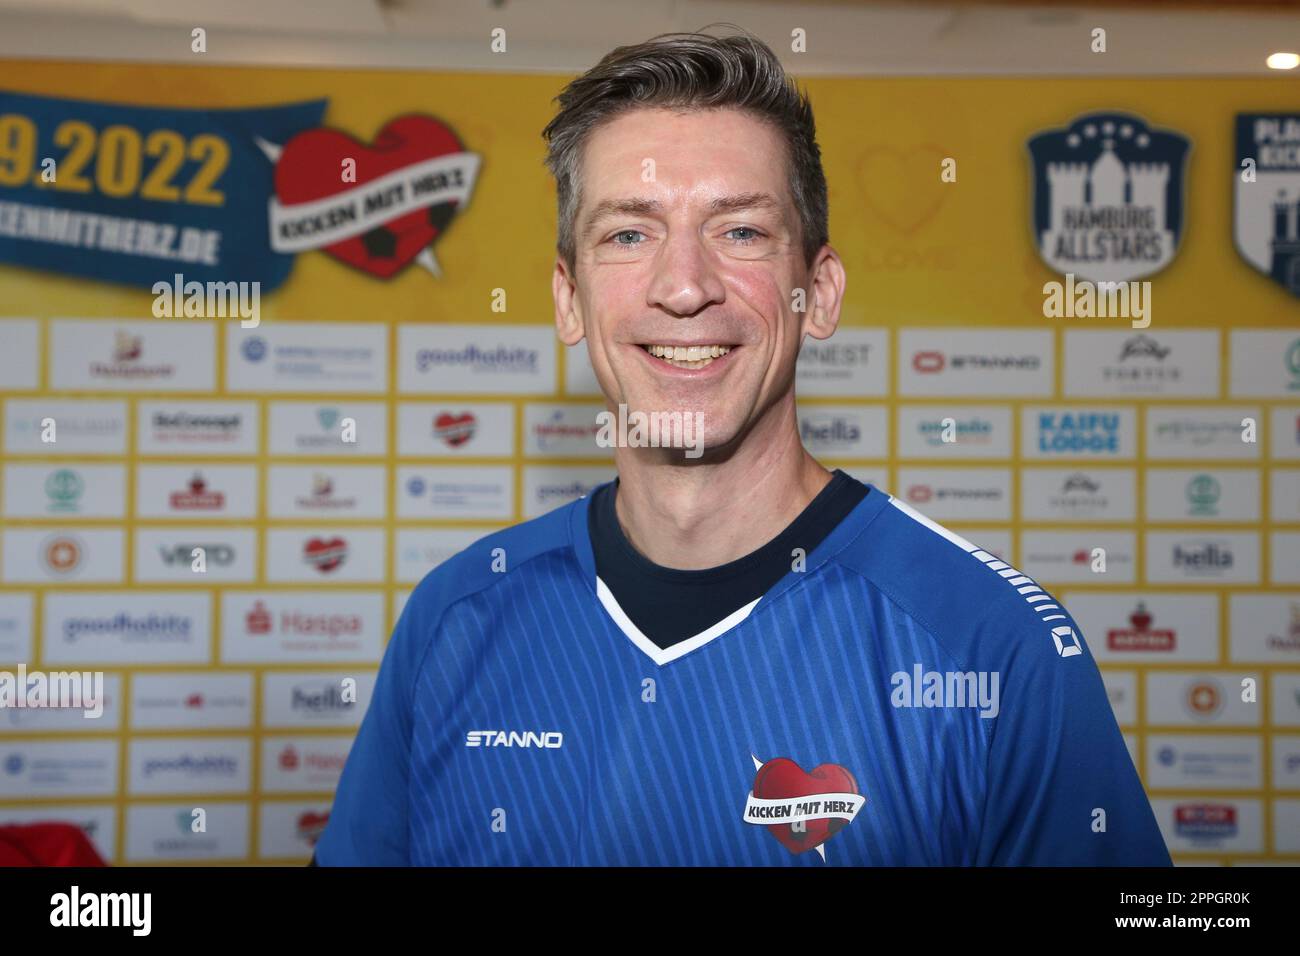 Steffen Hallaschka, Pressekonferenz Kicken mit Herz, Kaifu Lodge Hamburg, 23.08.2022 Stock Photo